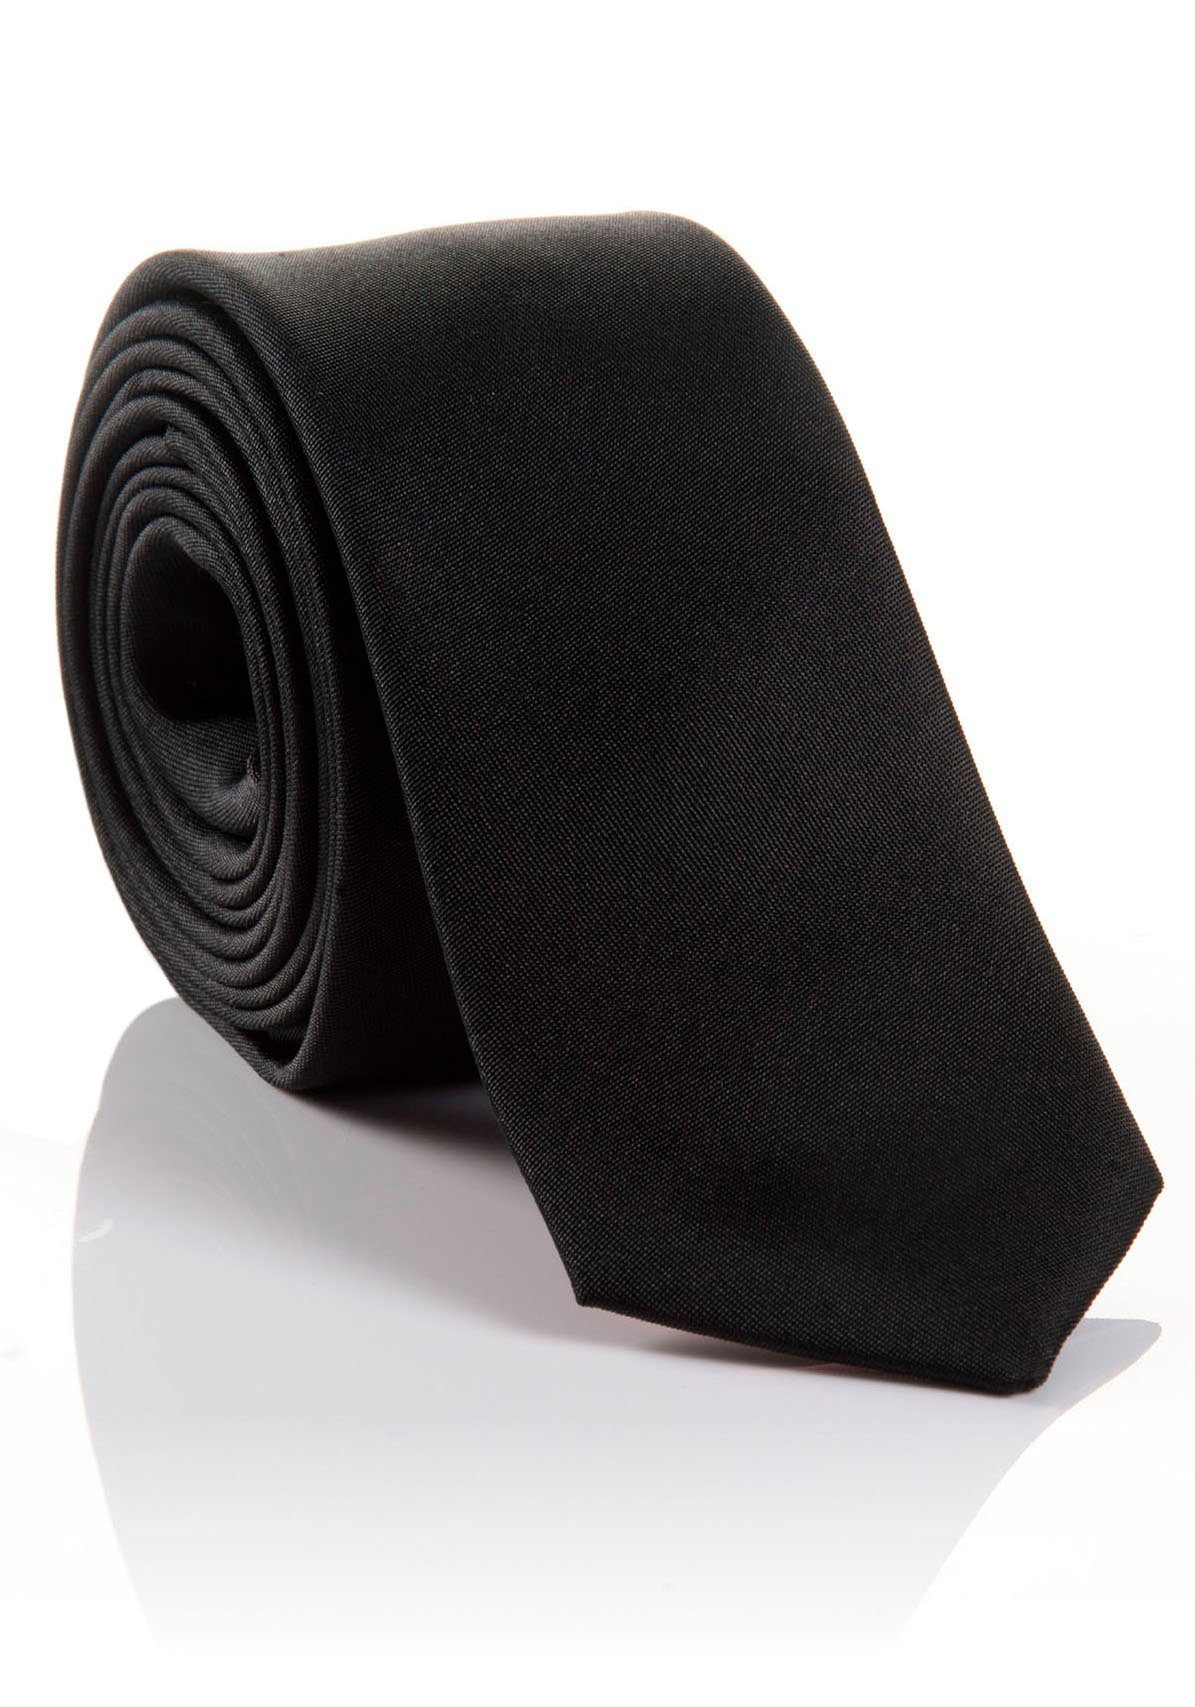 MONTI Krawatte LORENZO Hochwertig verarbeitete Seidenkrawatte mit hohem Tragekomfort black | Breite Krawatten